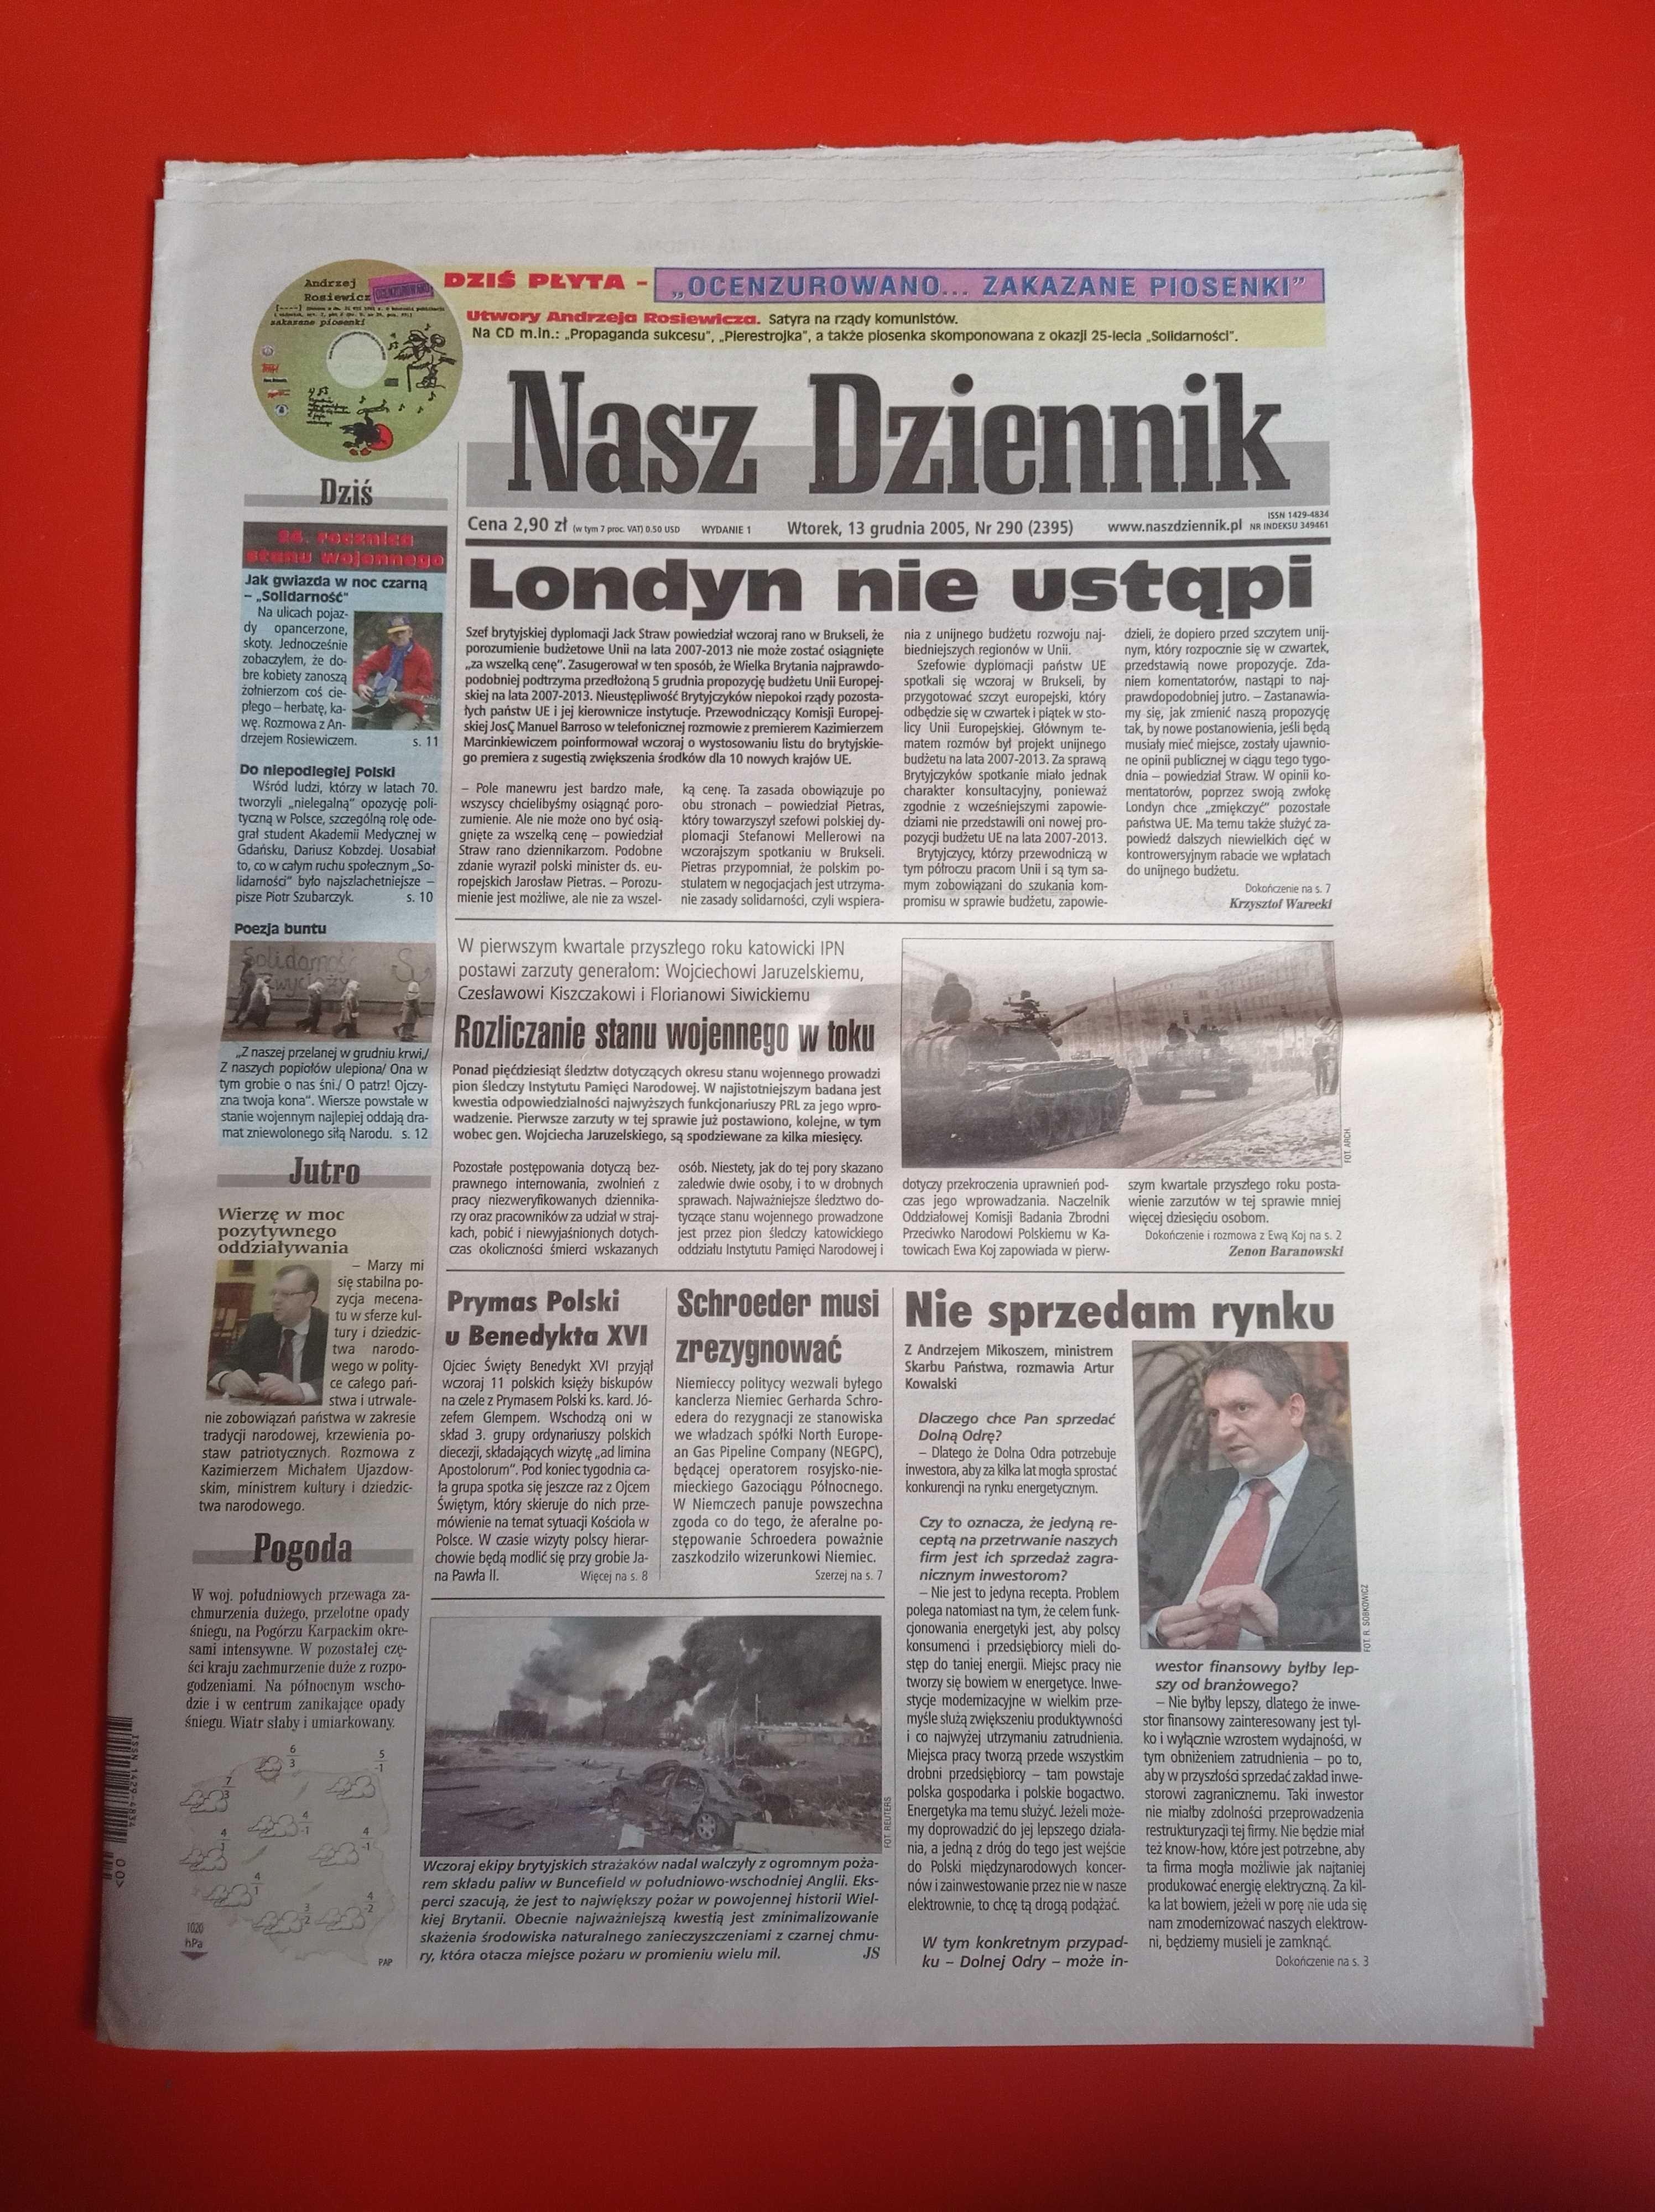 Nasz Dziennik, nr 290/2005, 13 grudnia 2005 + płyta "Ocenzurowano..."